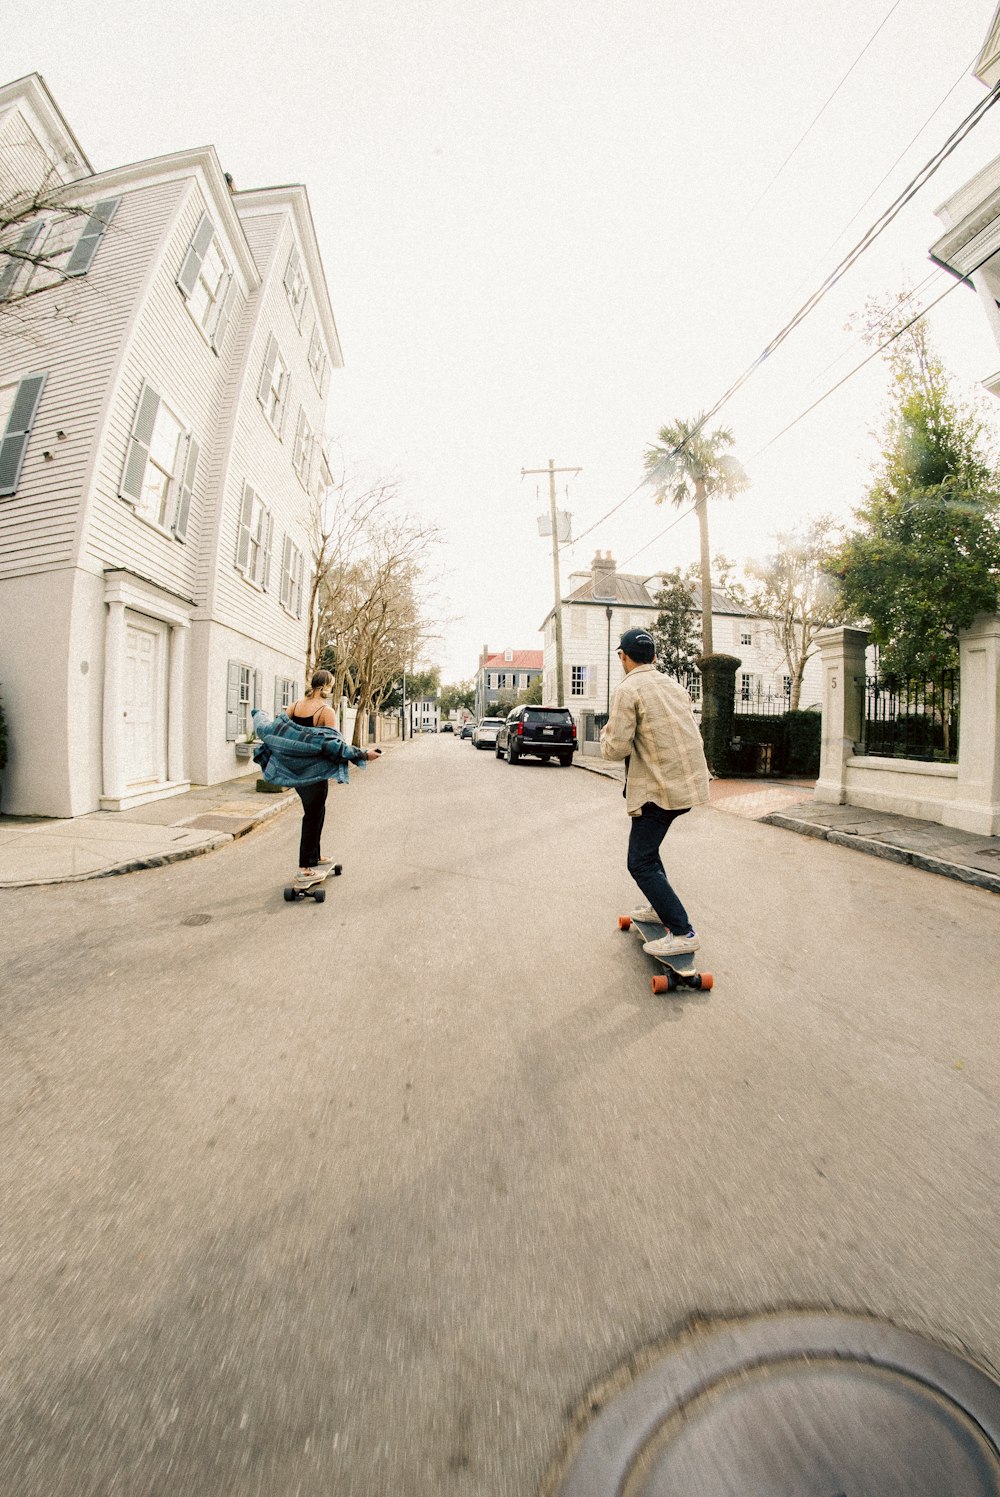 Un par de personas montando patinetas por una calle